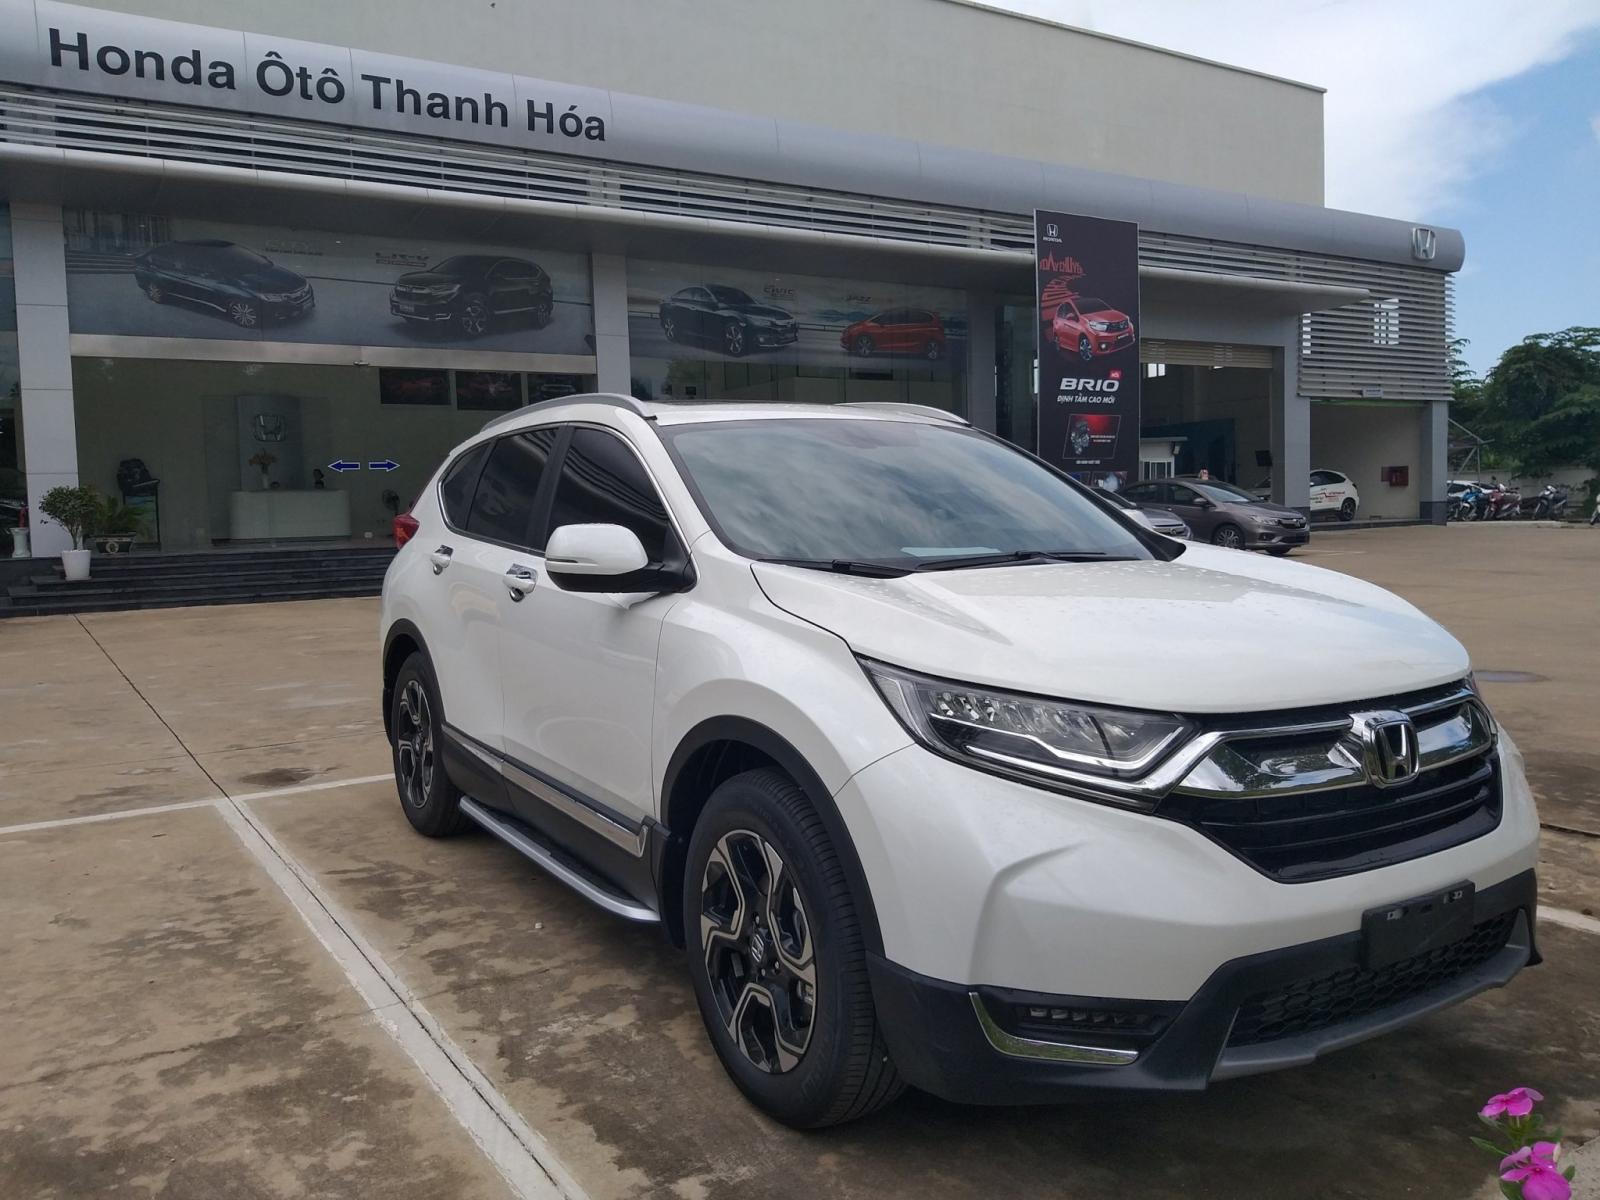 Giao ngay Honda CR-V 1.5 l, màu trắng, đời 2019, giảm giá sốc khi mua xe tại Honda Ôtô Thanh Hóa, LH: 0962028368.-1